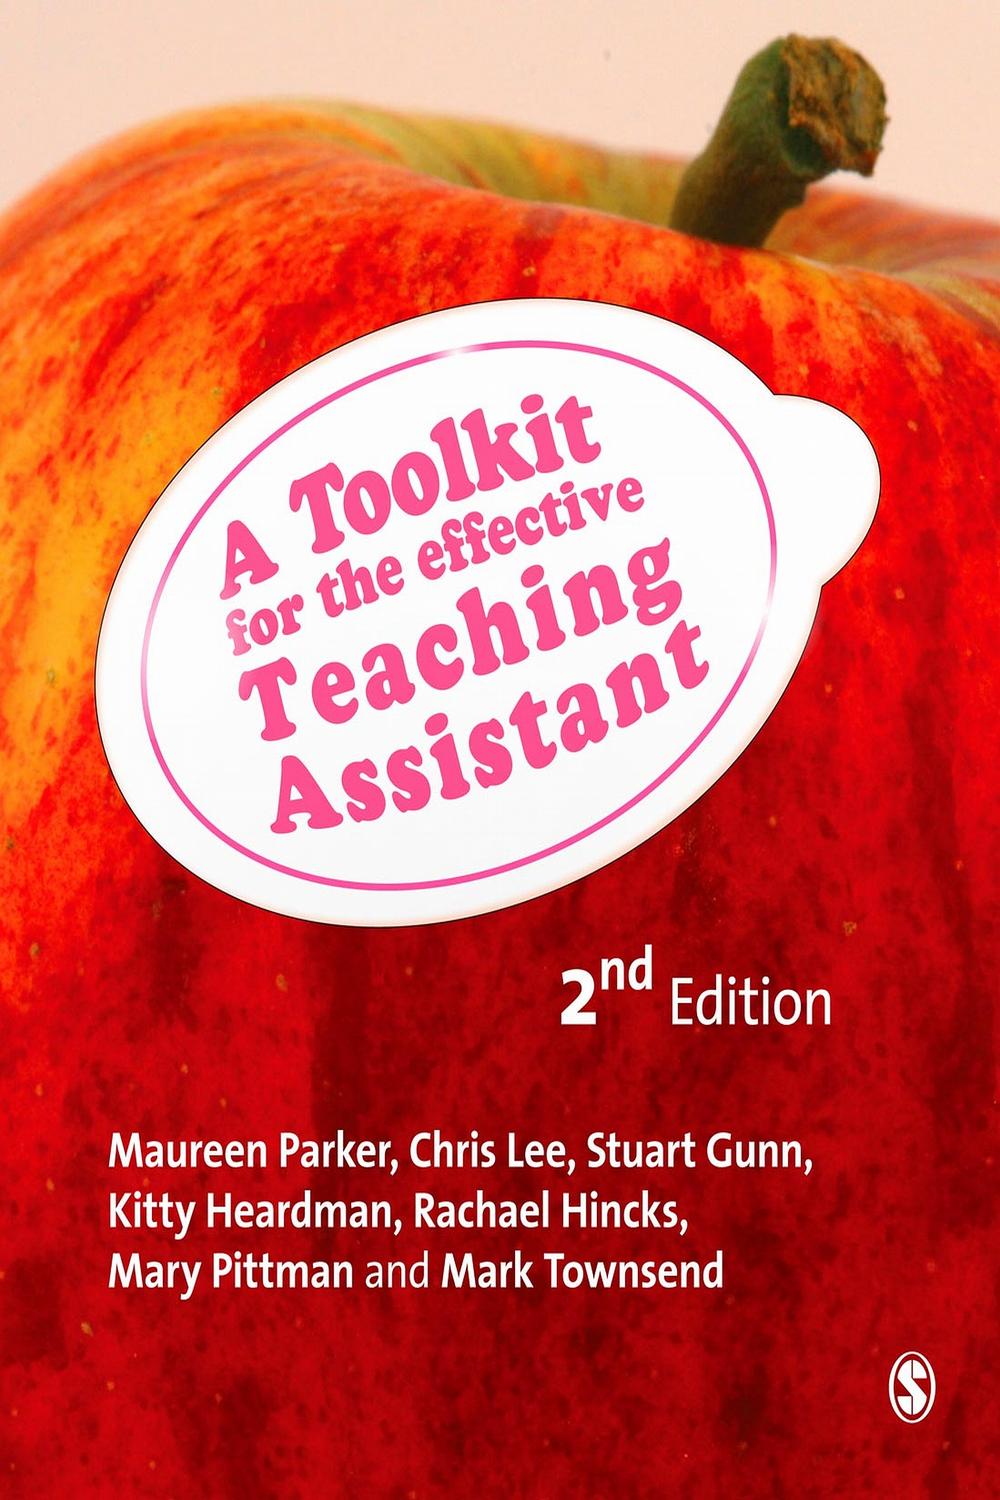 A Toolkit for the Effective Teaching Assistant - Maureen Parker, Chris Lee, Stuart Gunn, Kitty Heardman, Rachael Hincks, Mary Pittman, Mark Townsend